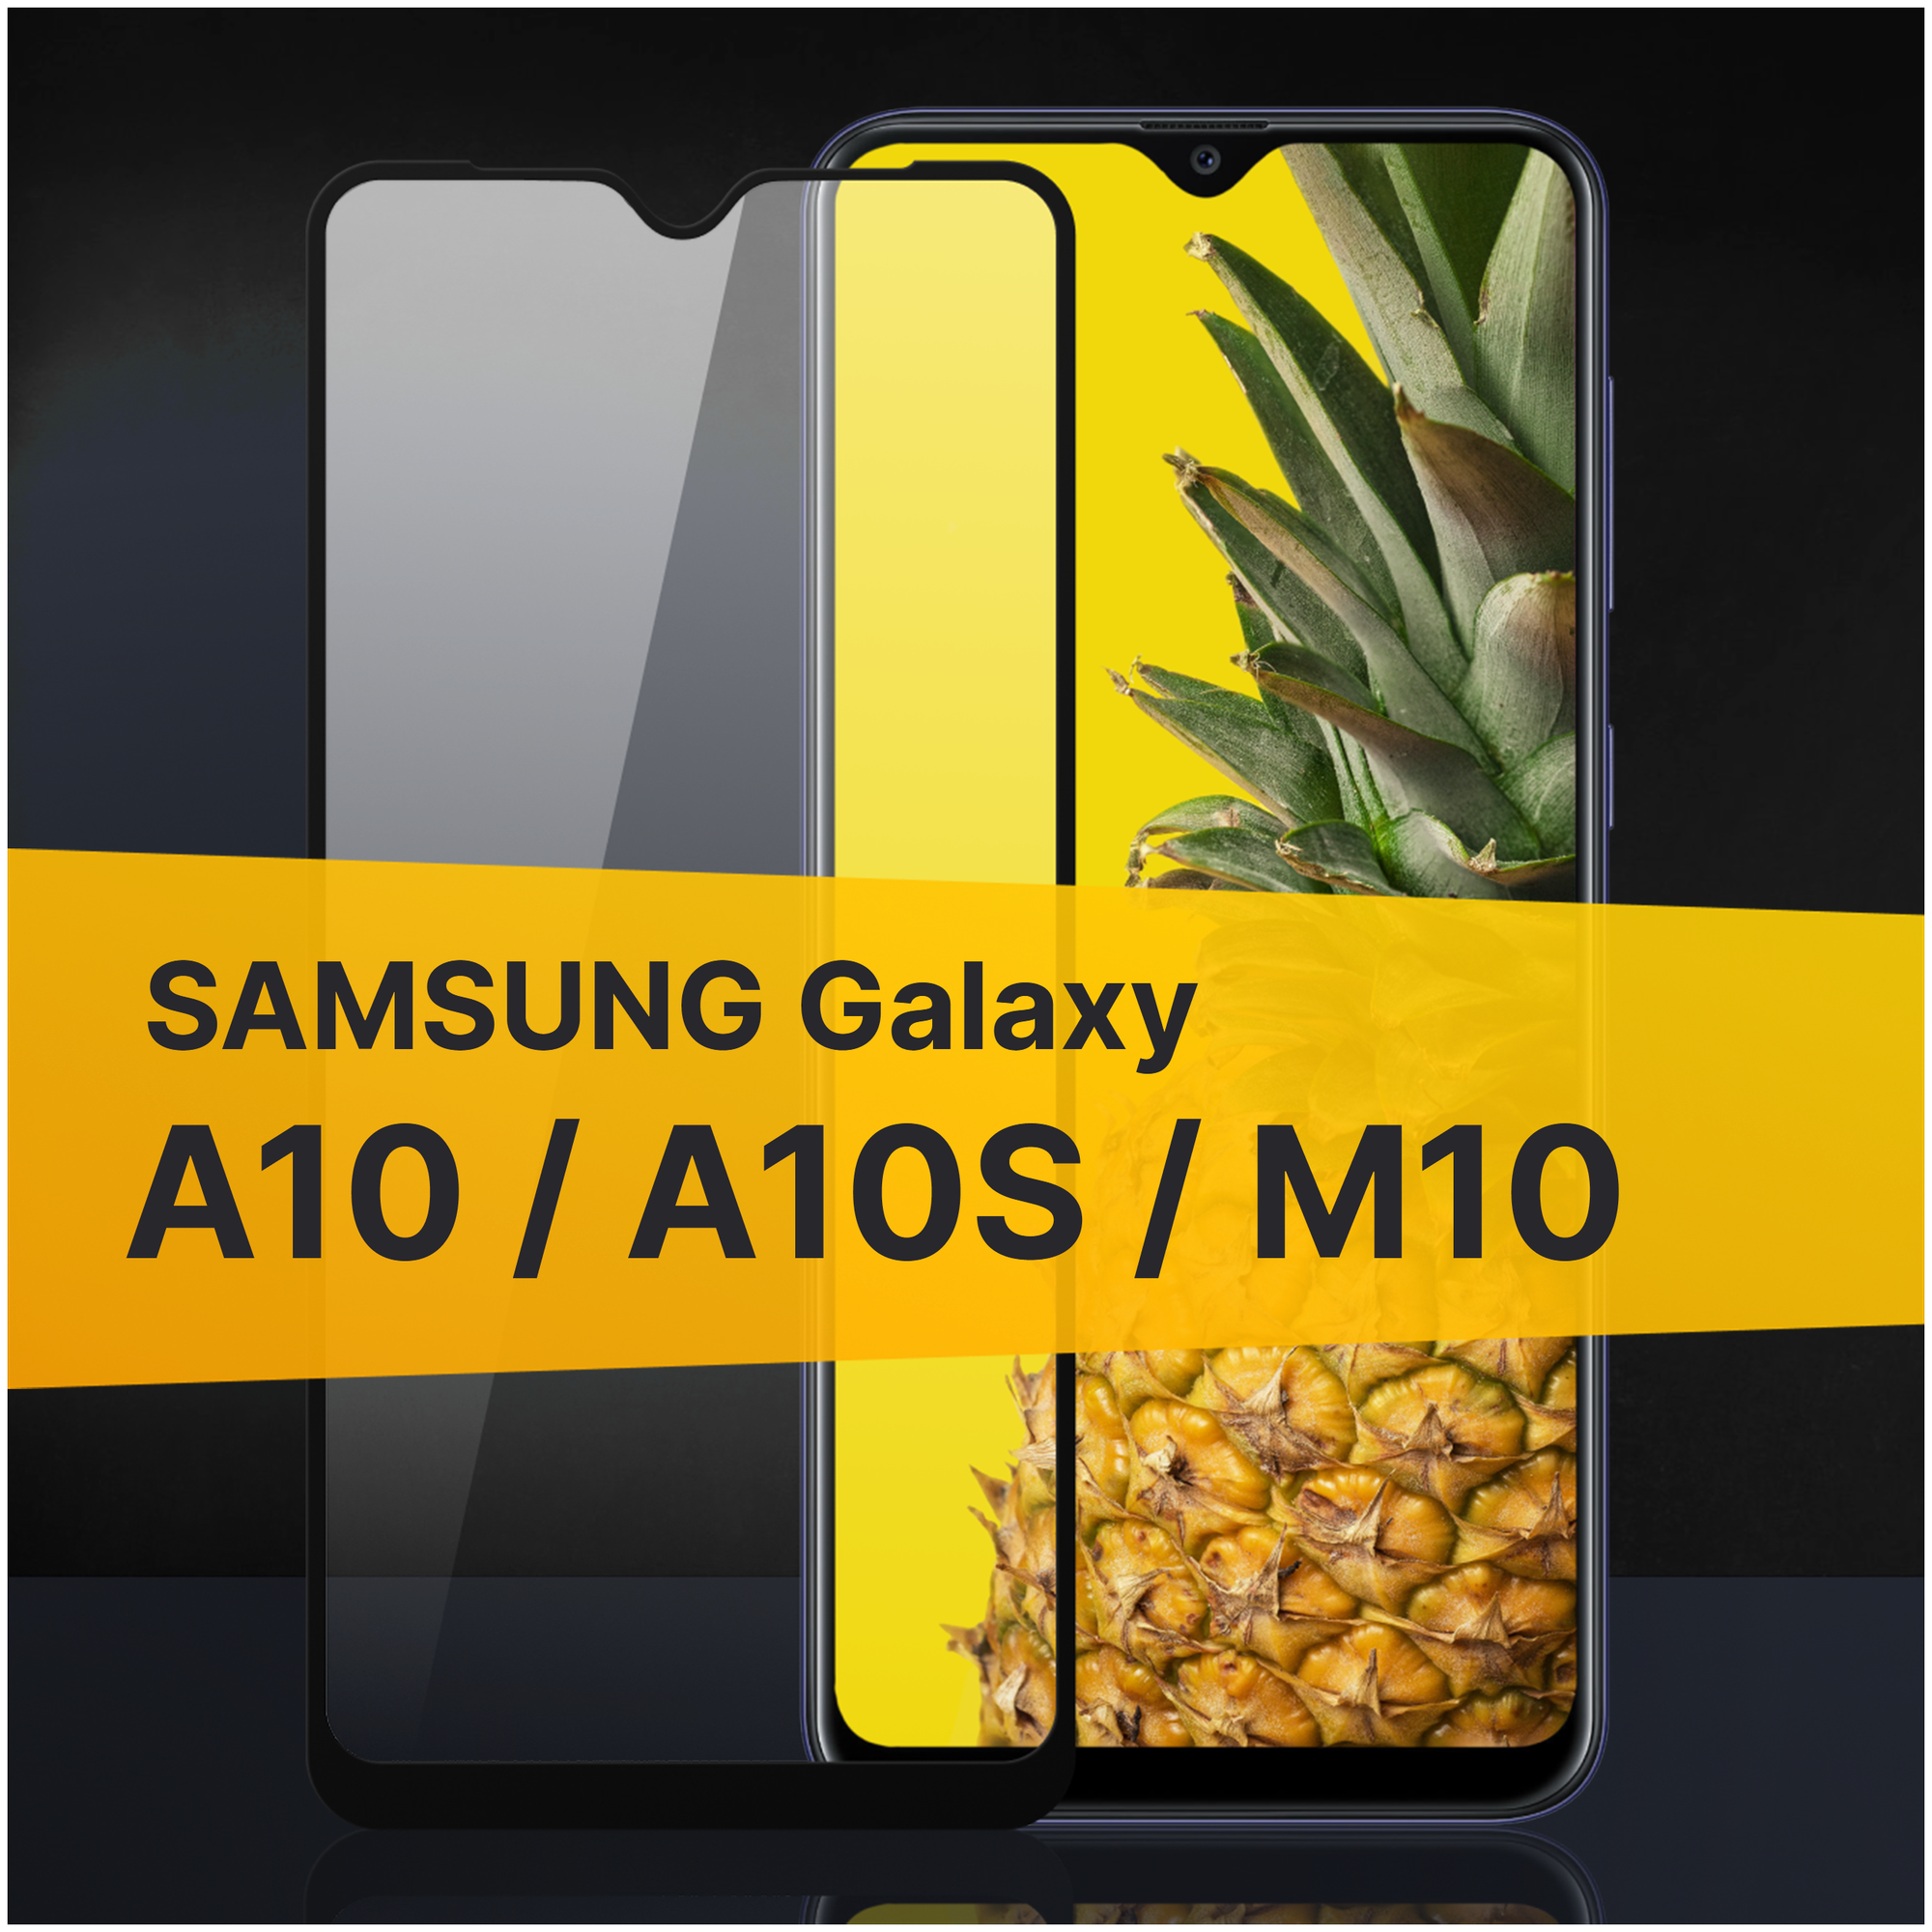 Противоударное защитное стекло для телефона Samsung Galaxy A10, A10S и M10 / Полноклеевое 3D стекло с олеофобным покрытием на смартфон Самсунг Галакси А10, А10С и М10 / С черной рамкой